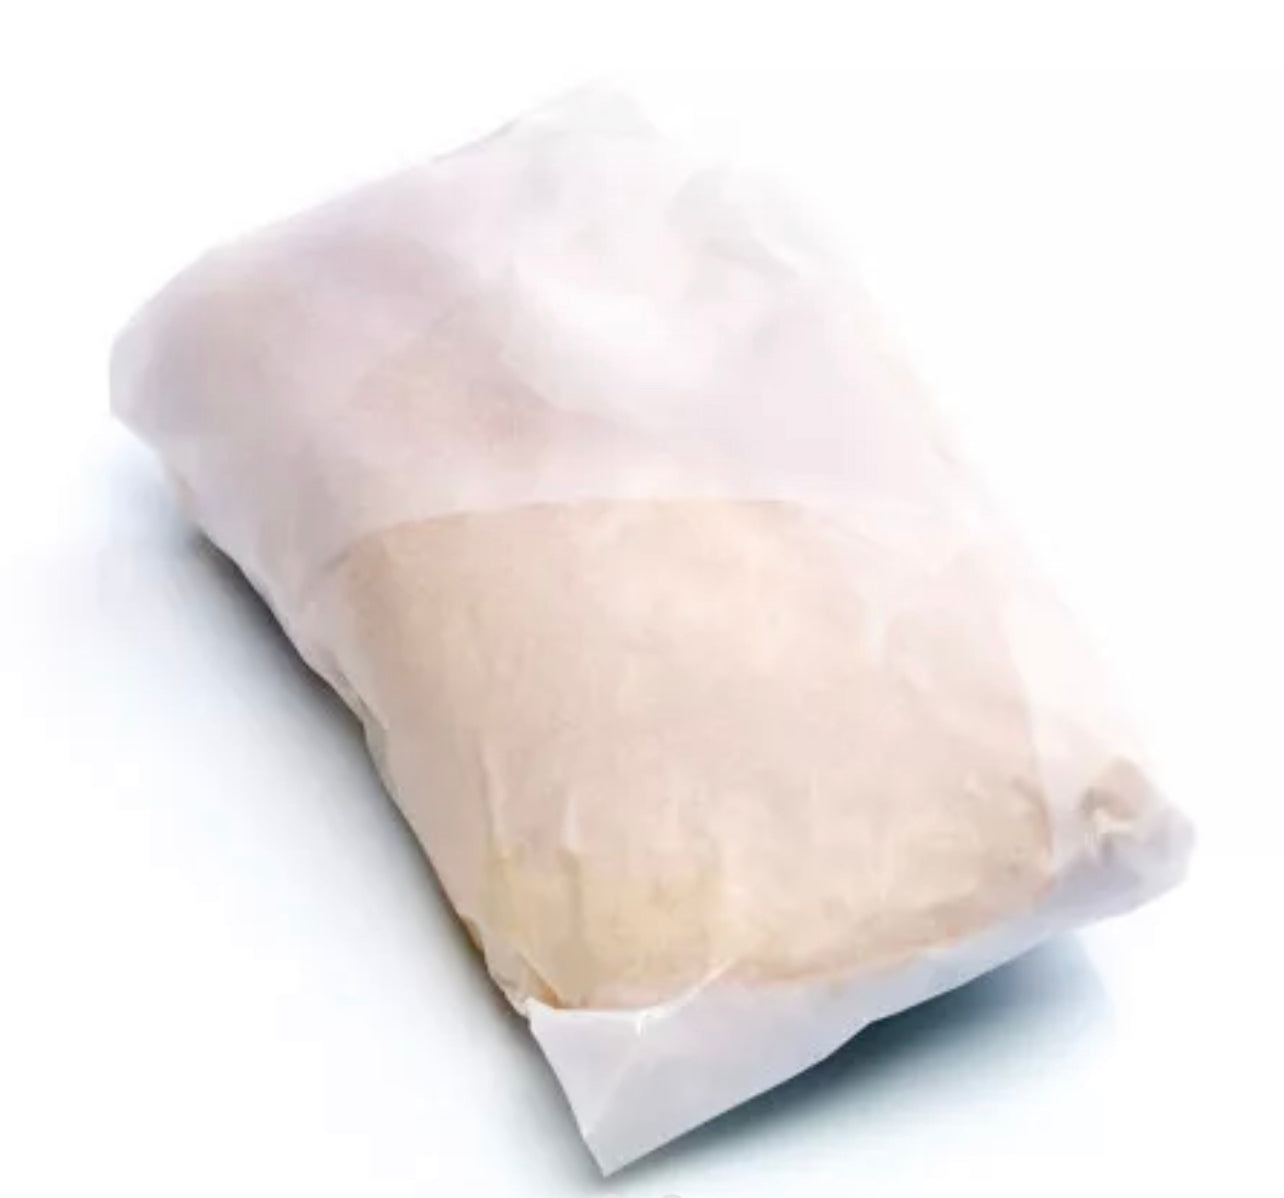 Foie gras de pato crudo desvenado (bolsa de papel) ±350g